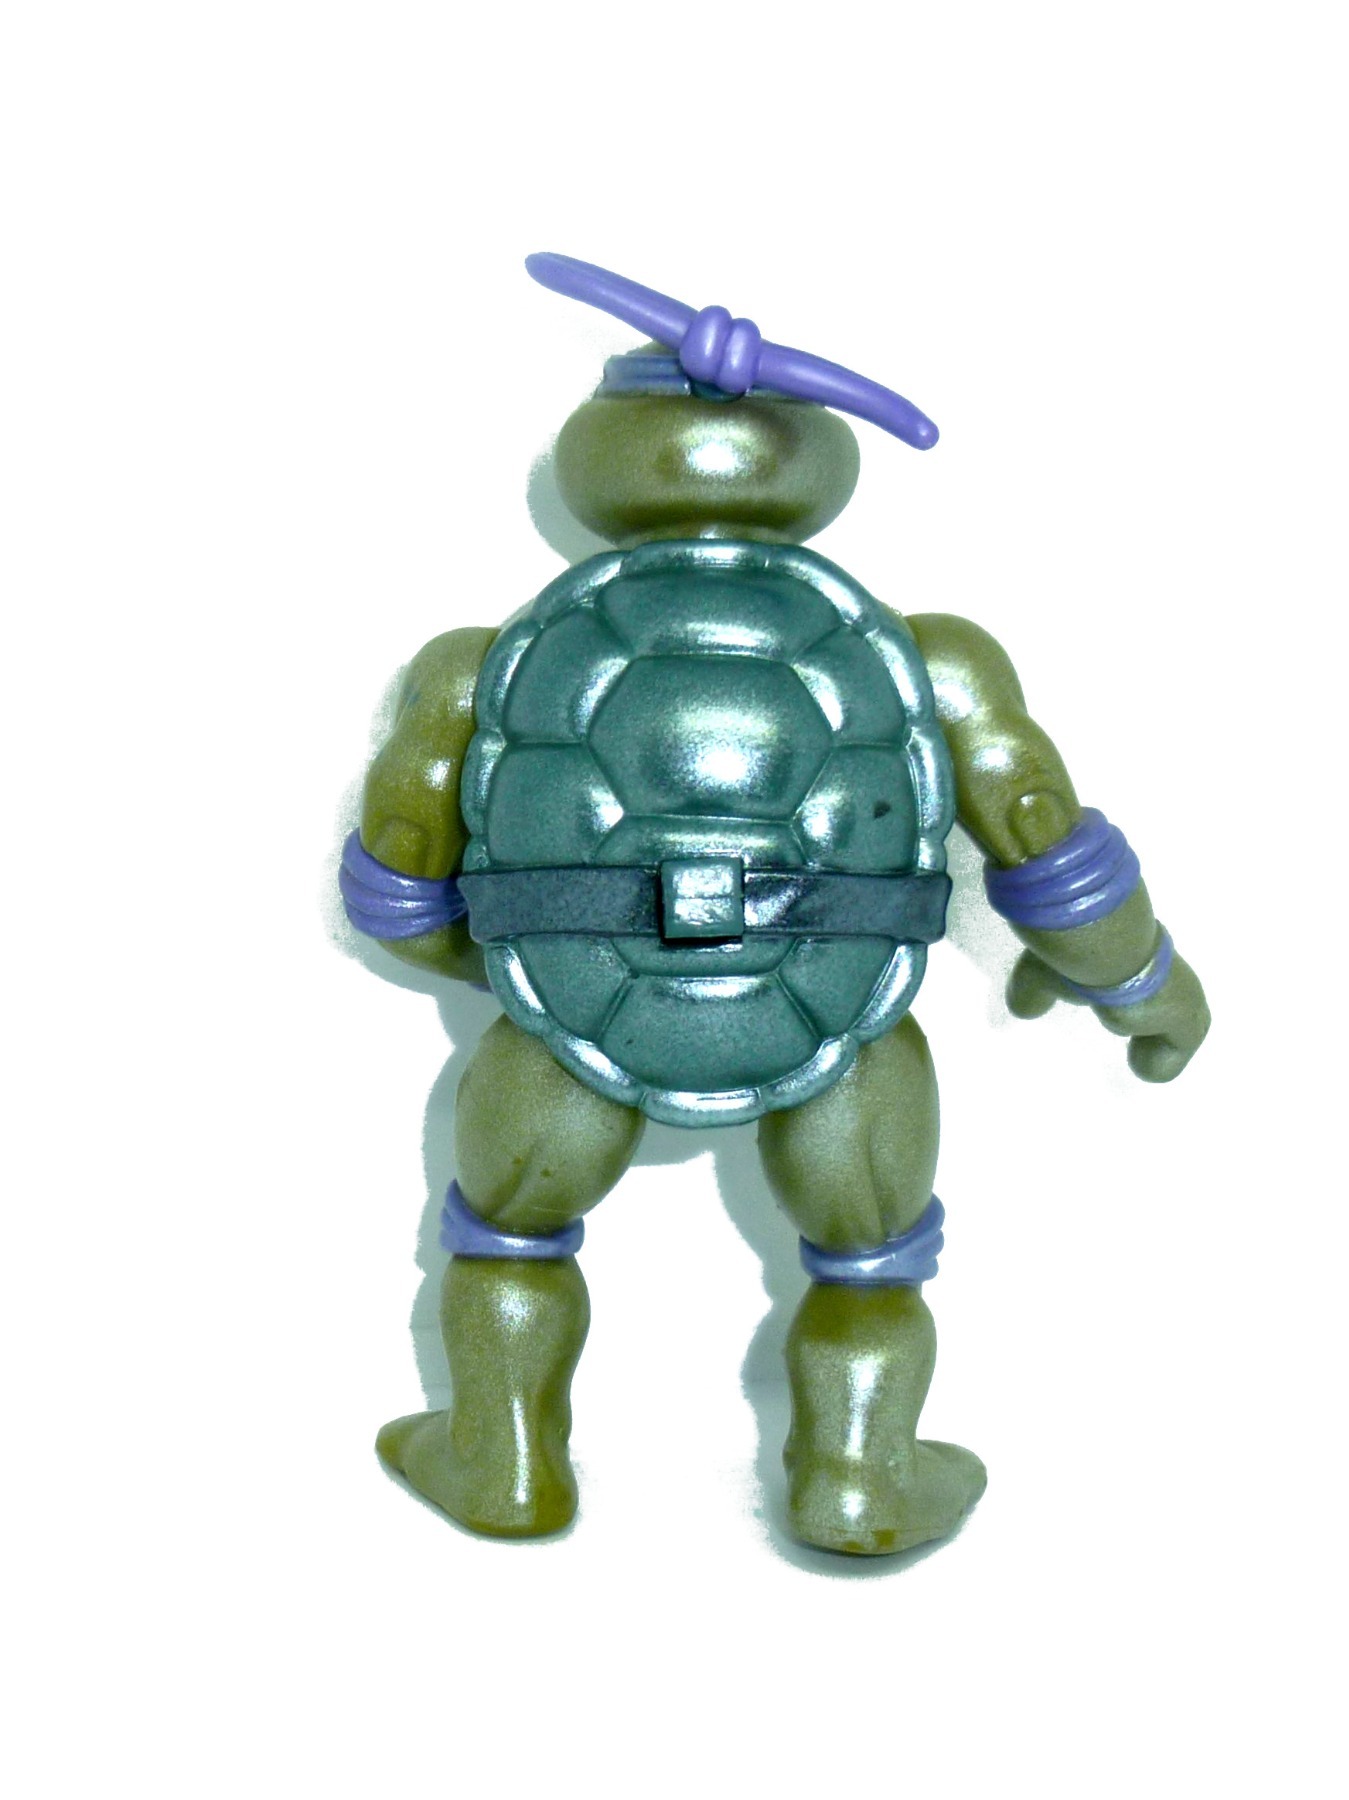 Toon Don / Donatello 1992 Mirage Studios / Playmates Toys 2